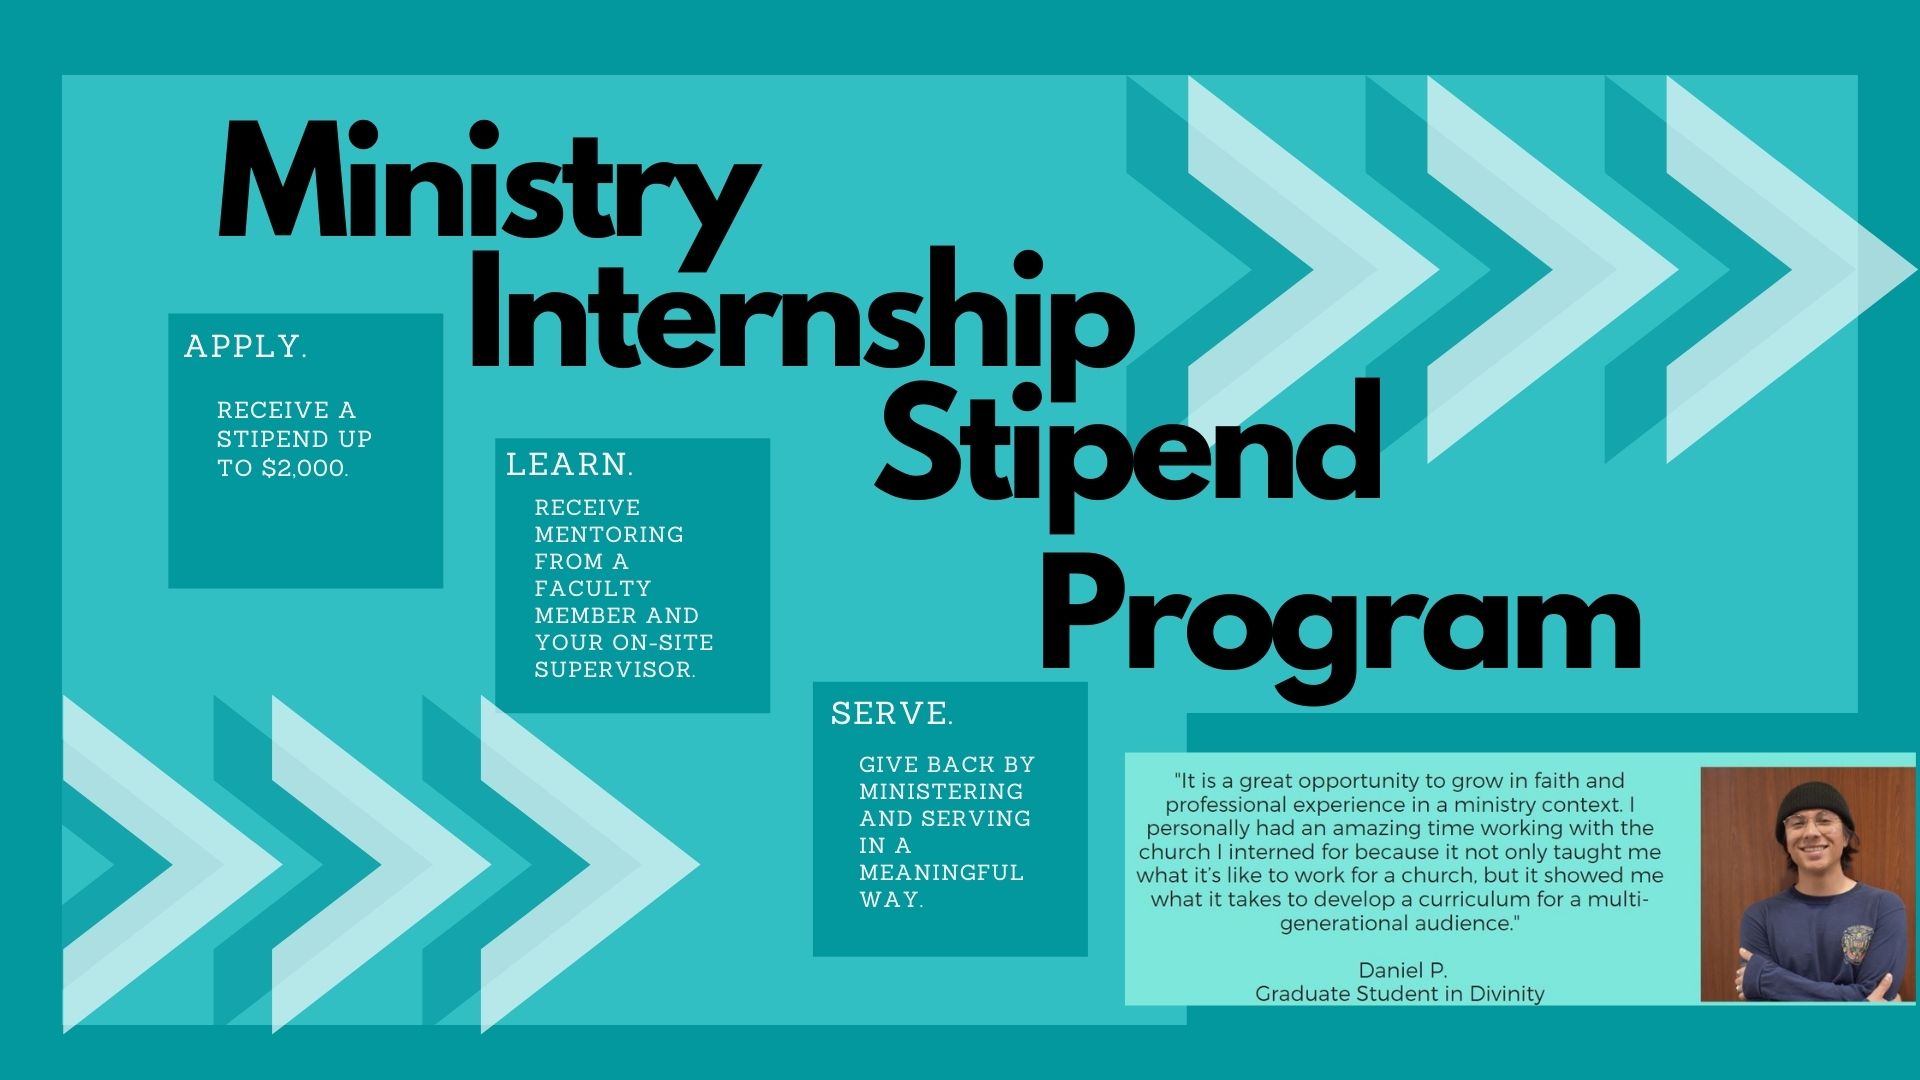 poster advertising ministry internship program